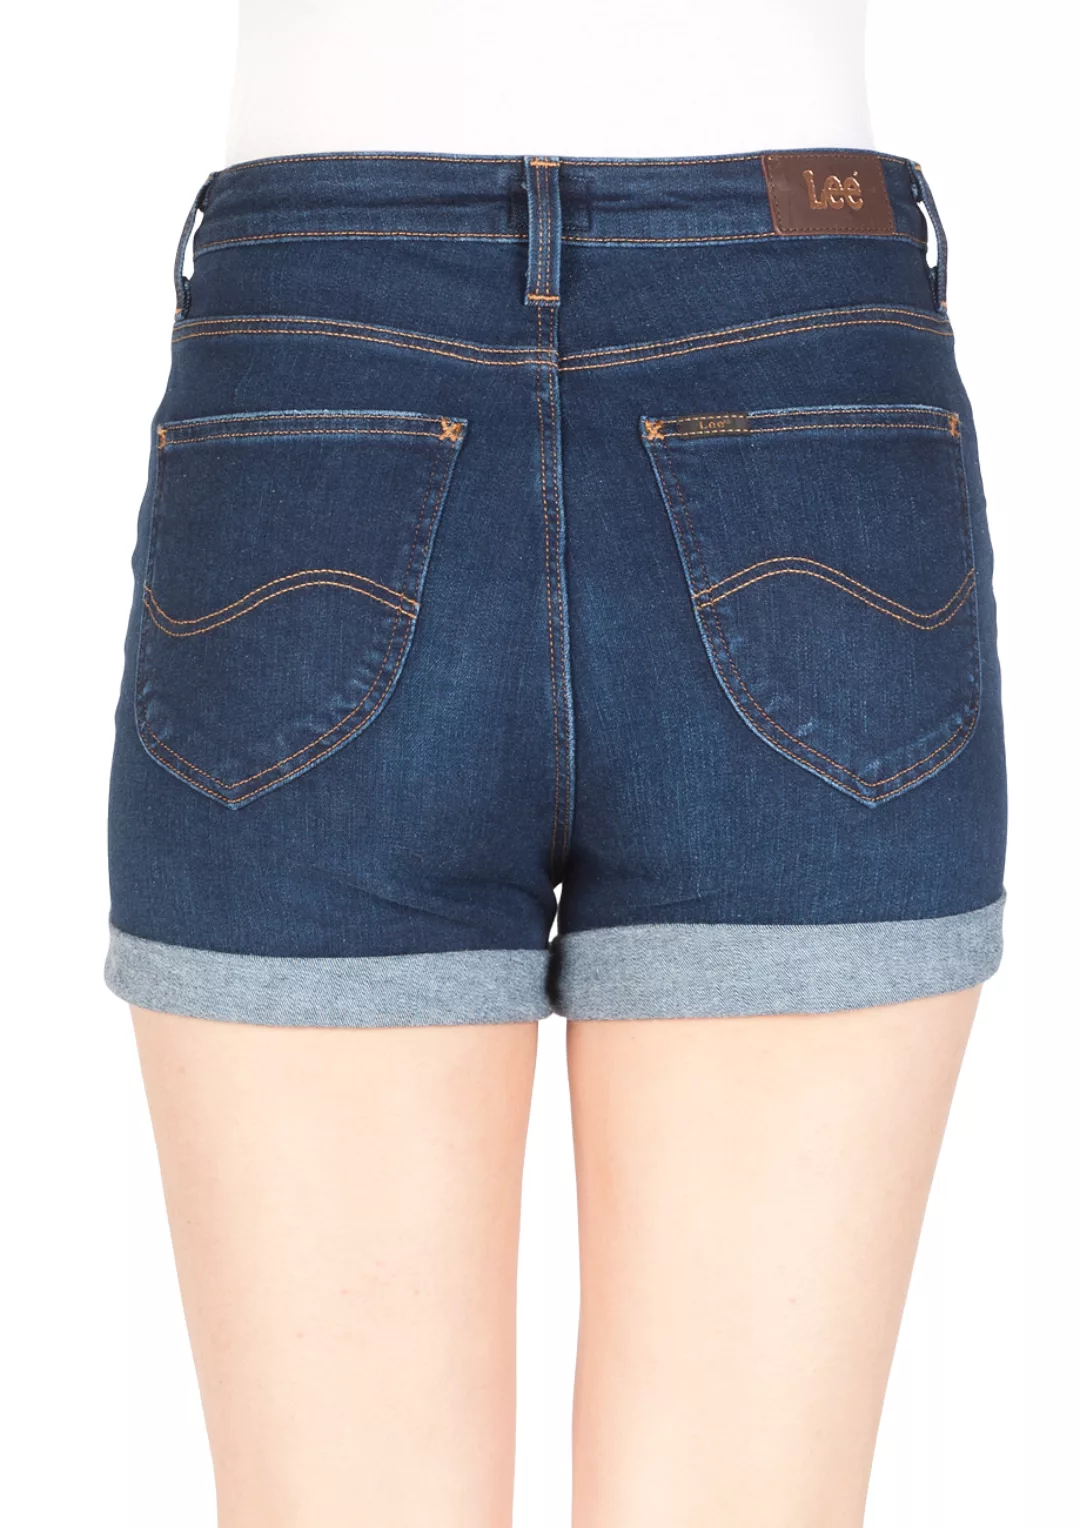 Lee Damen Jeans Short High Short -Blau - Dark Urban Indigo günstig online kaufen